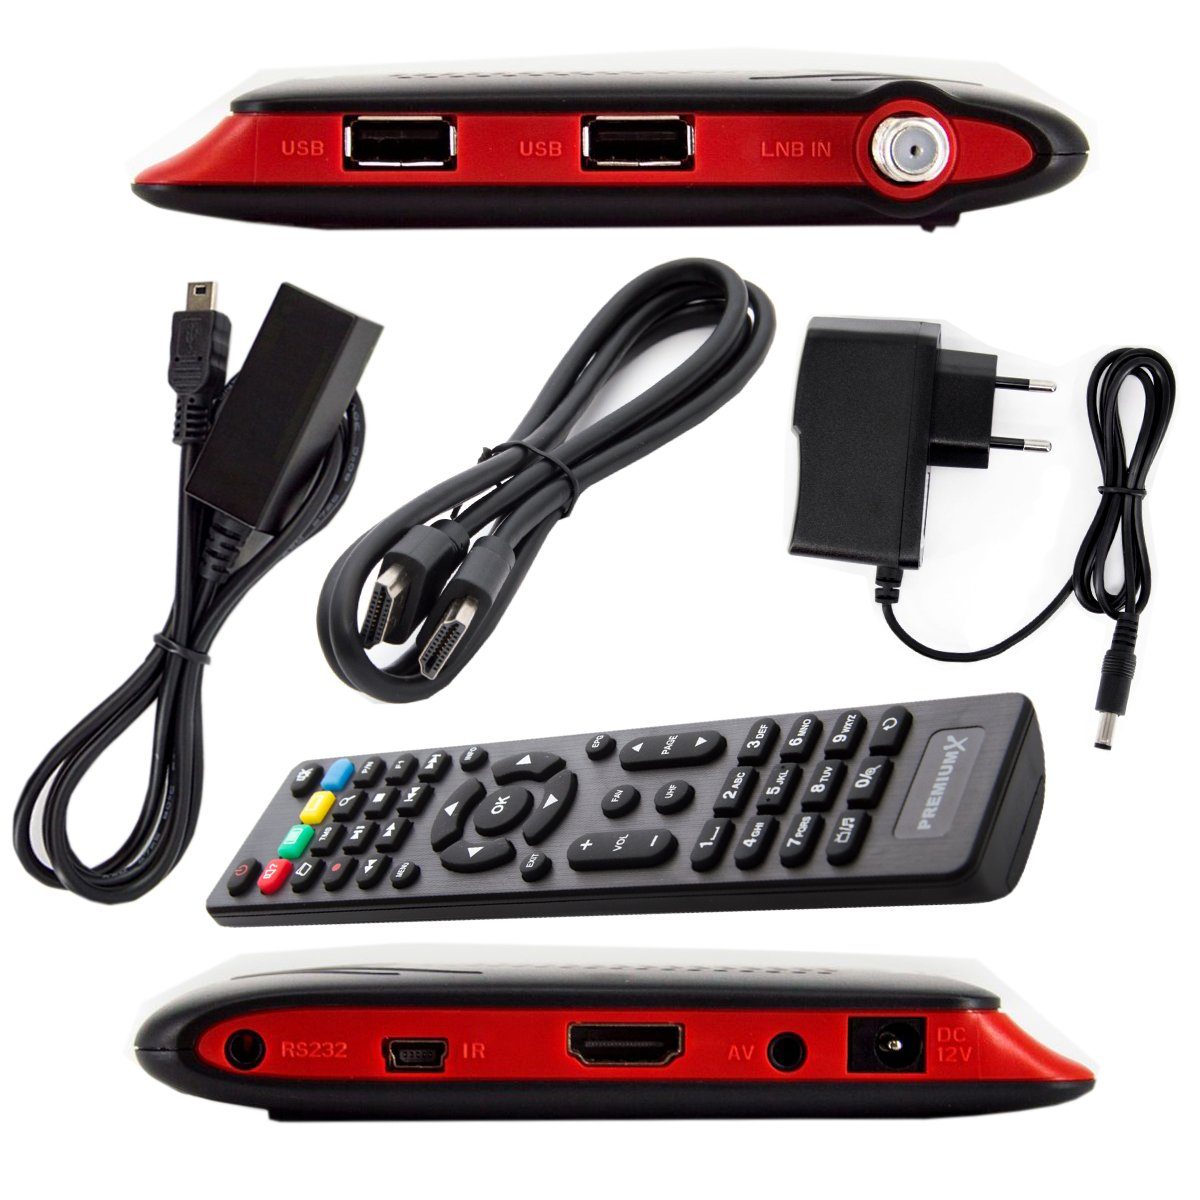 PremiumX Mini HD FTA FULLHD USB 220S DVB-S2 SAT-Receiver HDMI SAT Digital Receiver